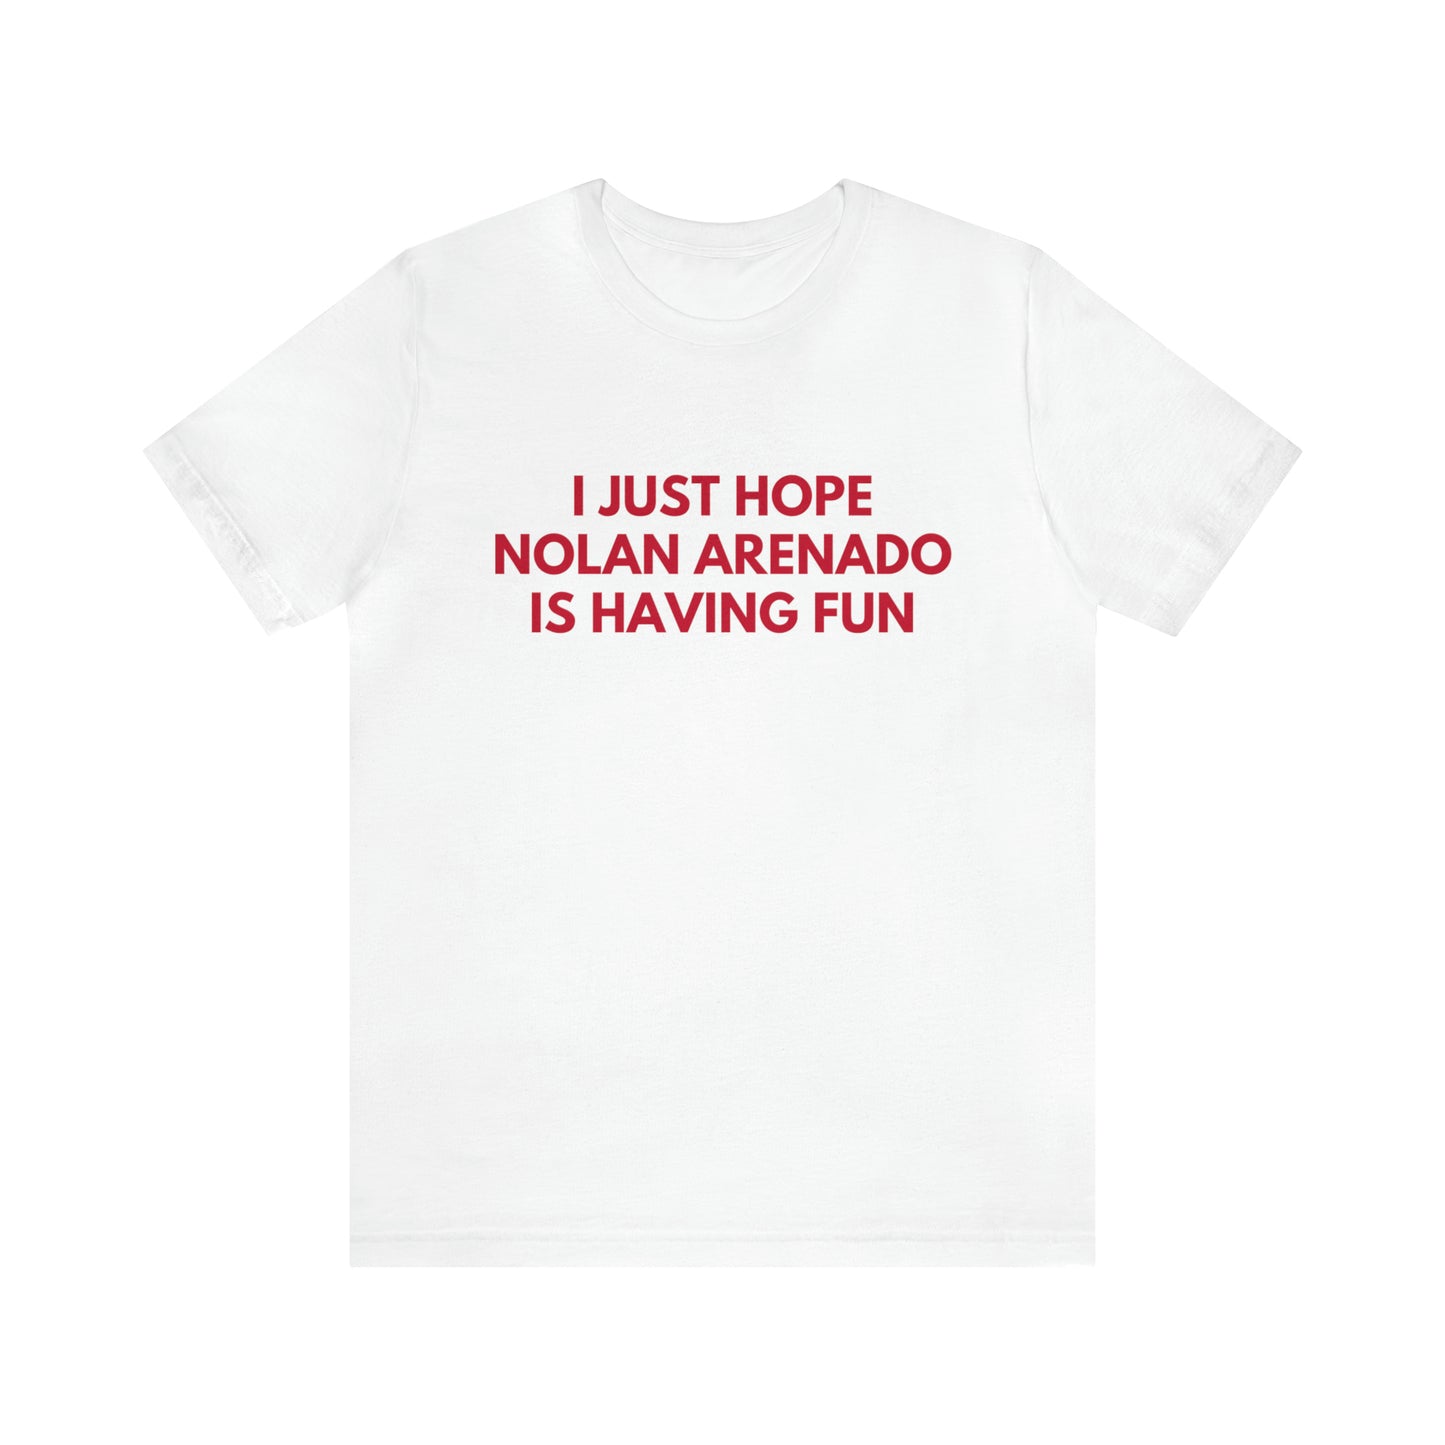 Nolan Arenado Having Fun - Unisex T-shirt